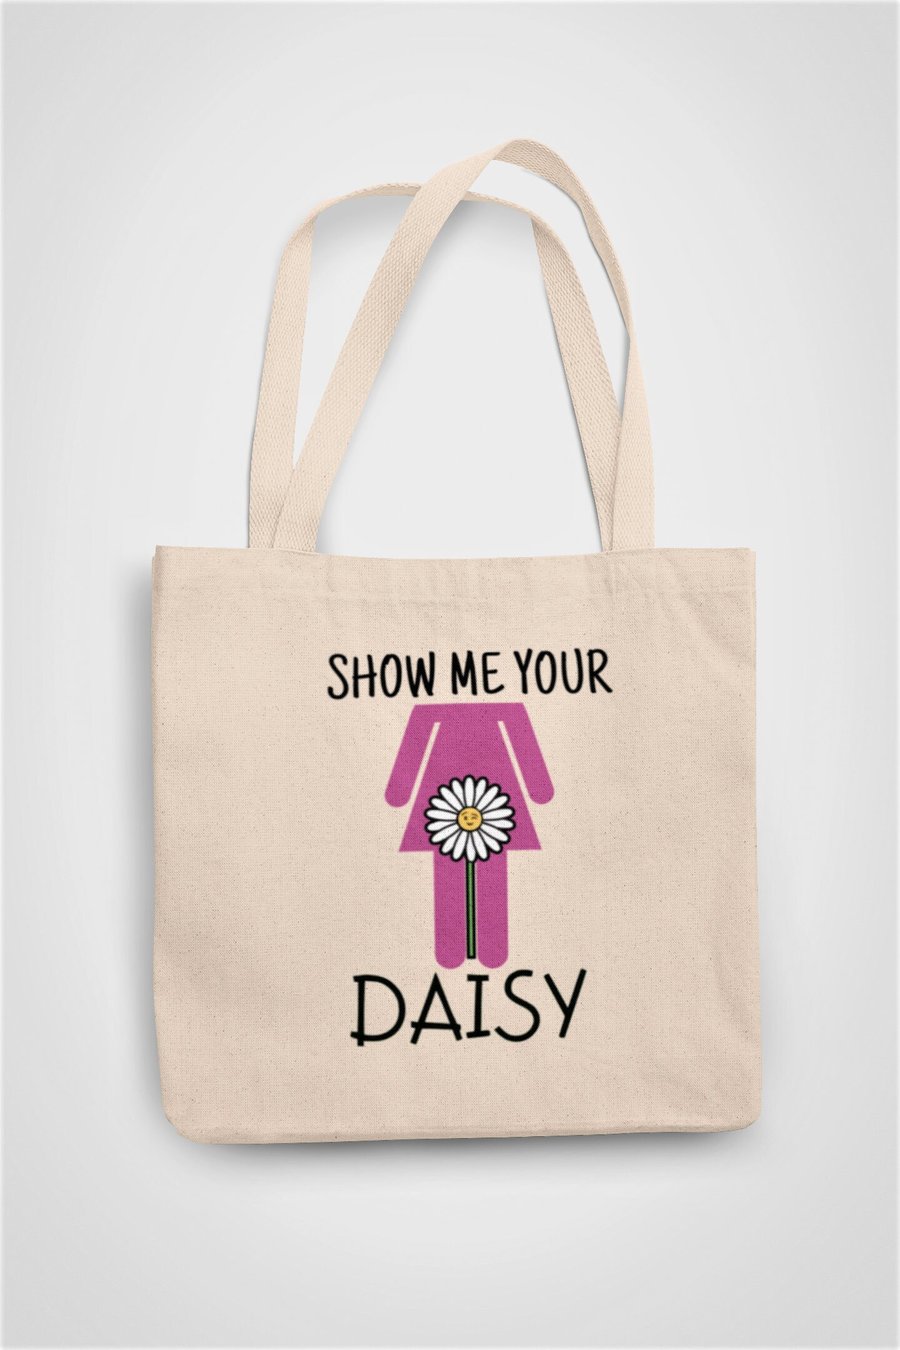 Show me your Daisy Outdoor Garden Tote Bag Reusable Cotton bag - Novelty funny 